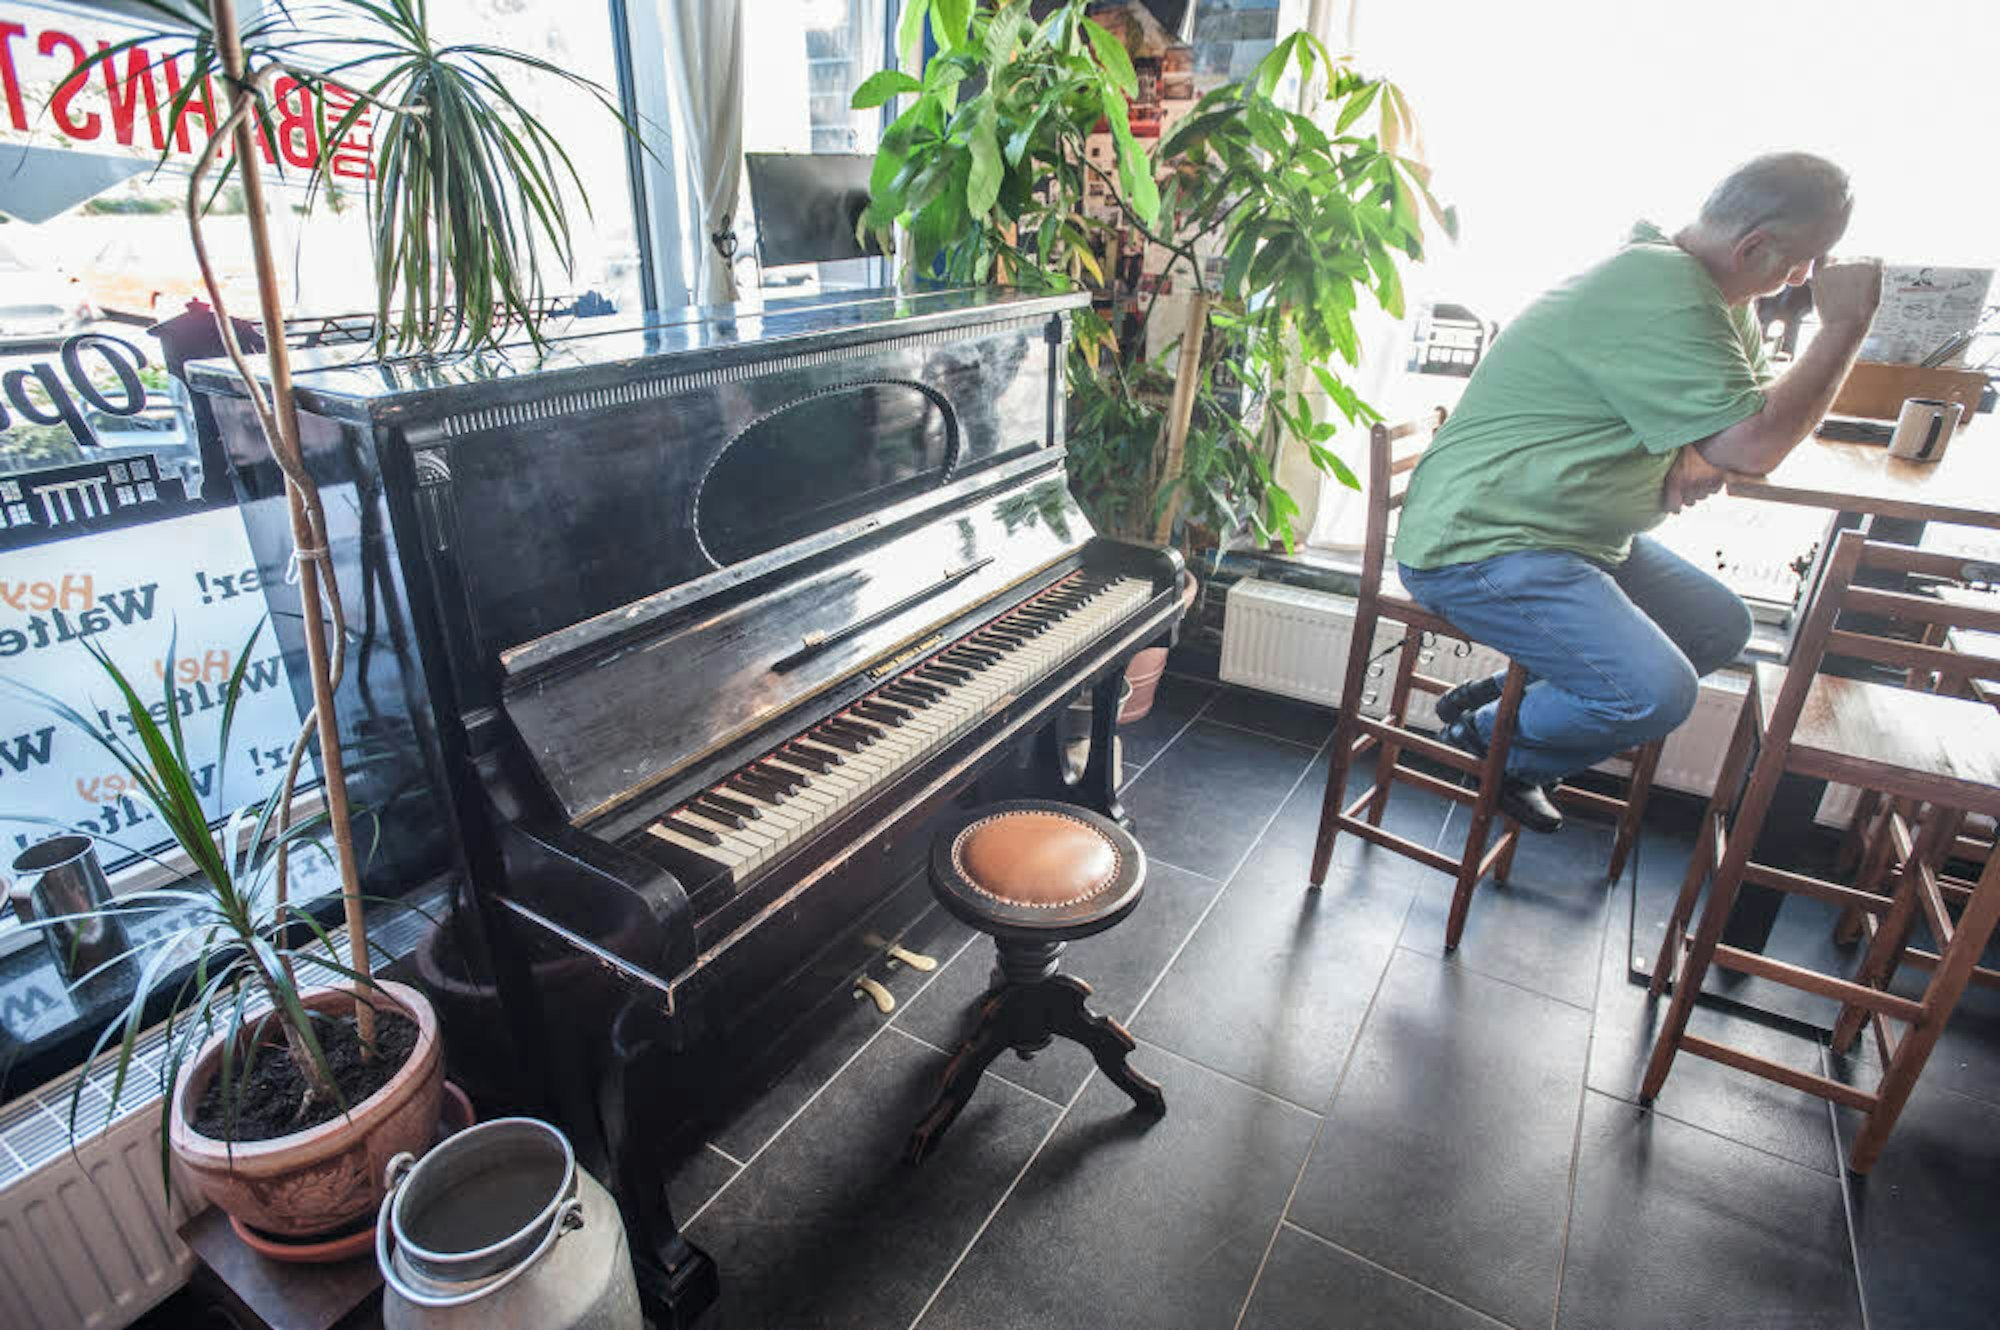 Das alte Klavier hat Walter Alejandro di Cara von der Tante einer Freundin, das Mobiliar hat er teils selbst zusammengebaut.